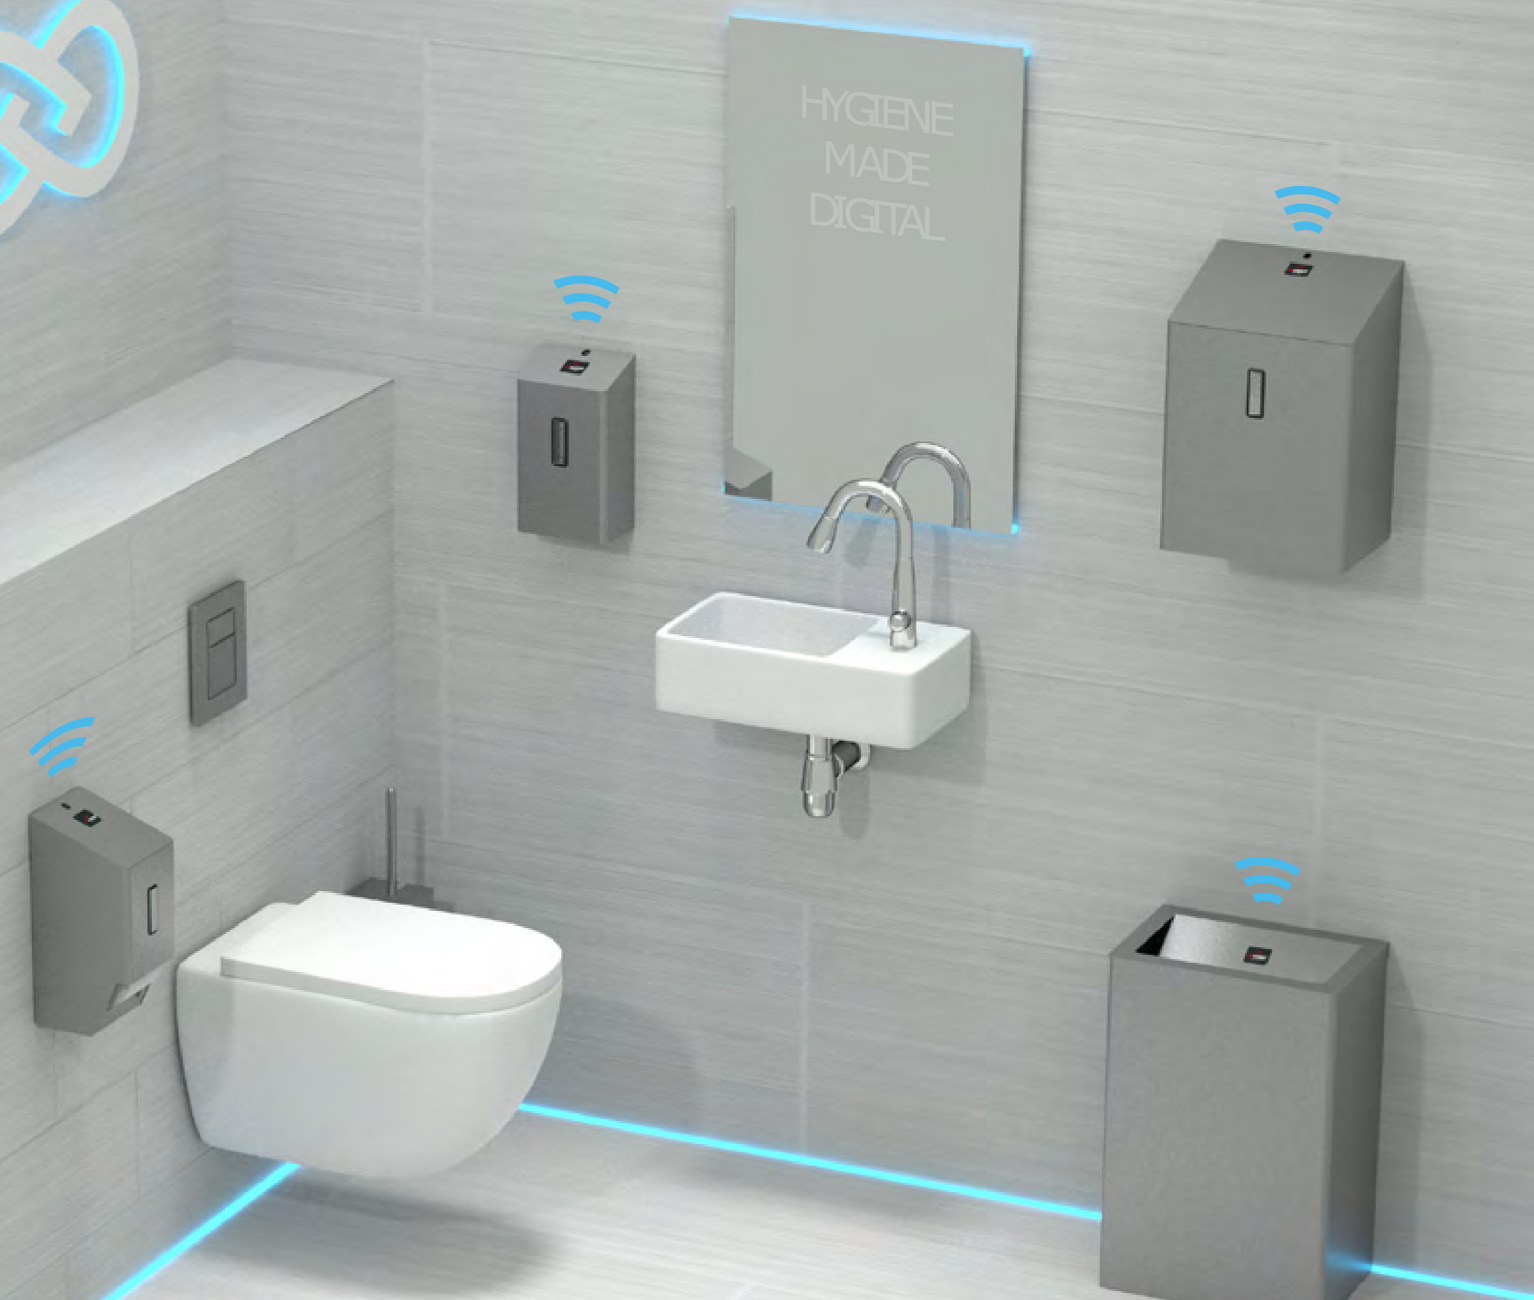 smart washroom sensors iot toilet